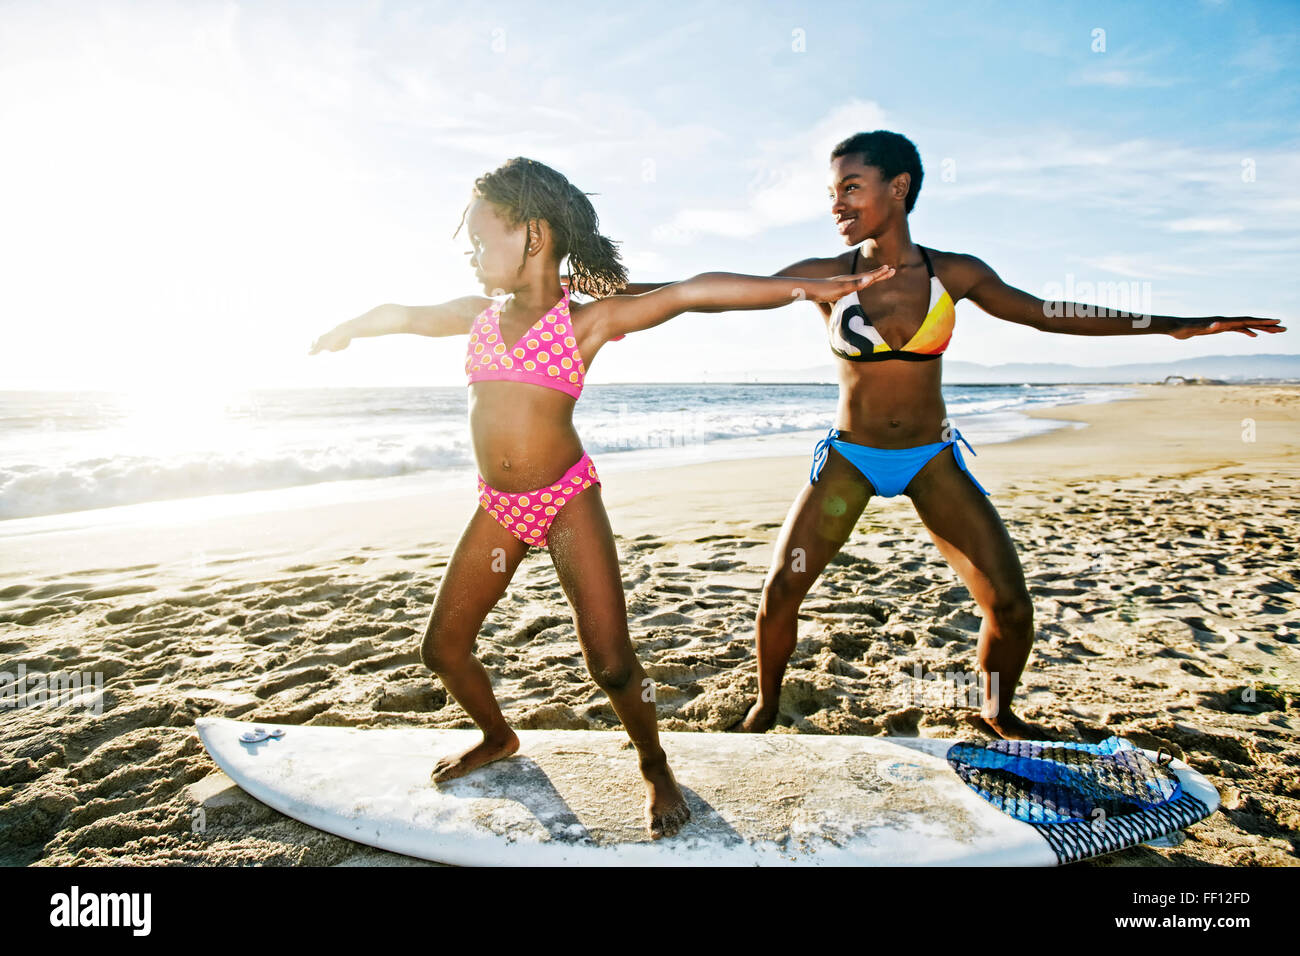 Hija de madre negra enseñando a surfear en la playa Foto de stock